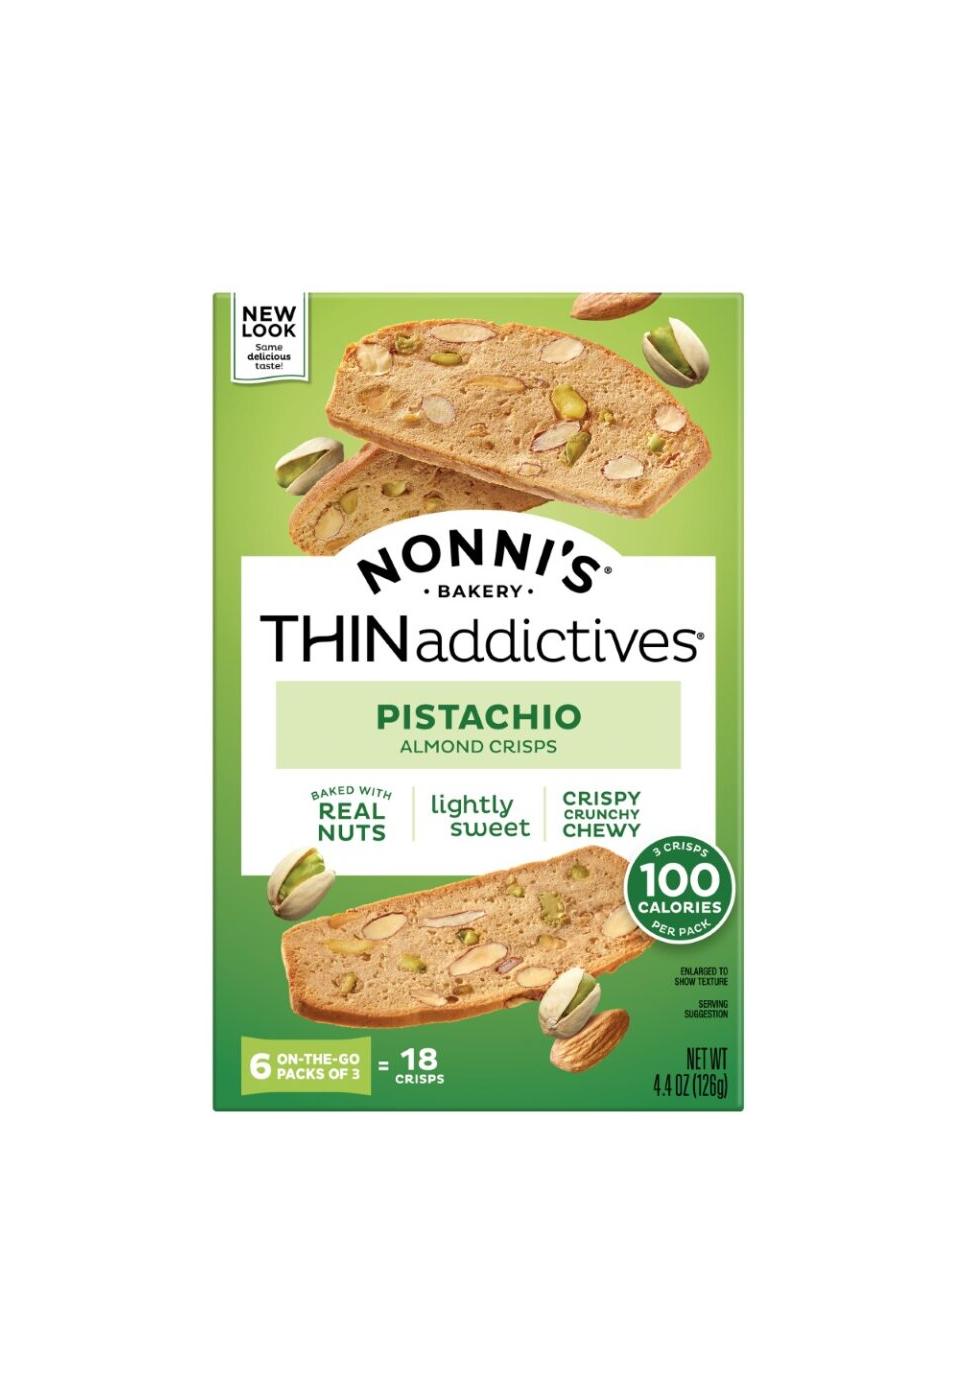 Nonni's Thin Addictives Pistachio Almond Crisps; image 1 of 3